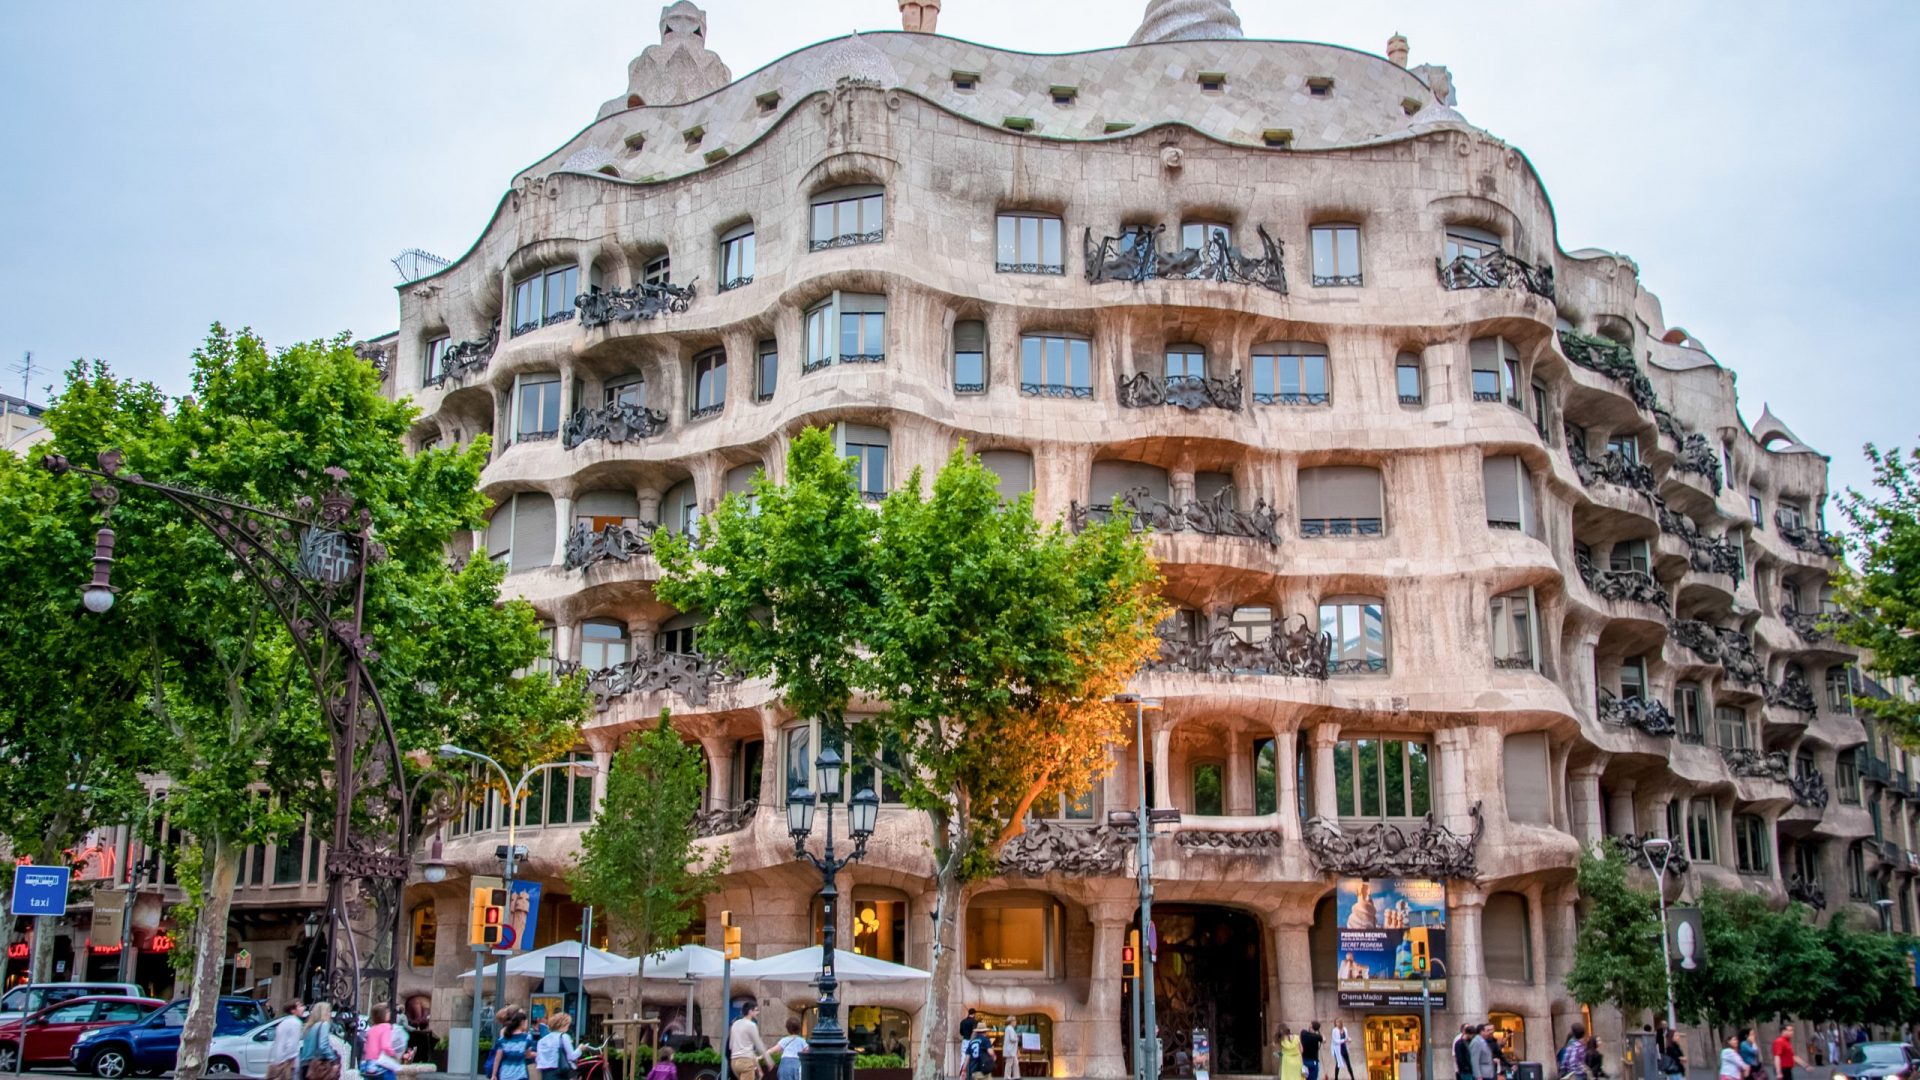 Barcelona, Spain - June 8, 2013: Residential house "Casa Mila", landmark of the city of Barcelona